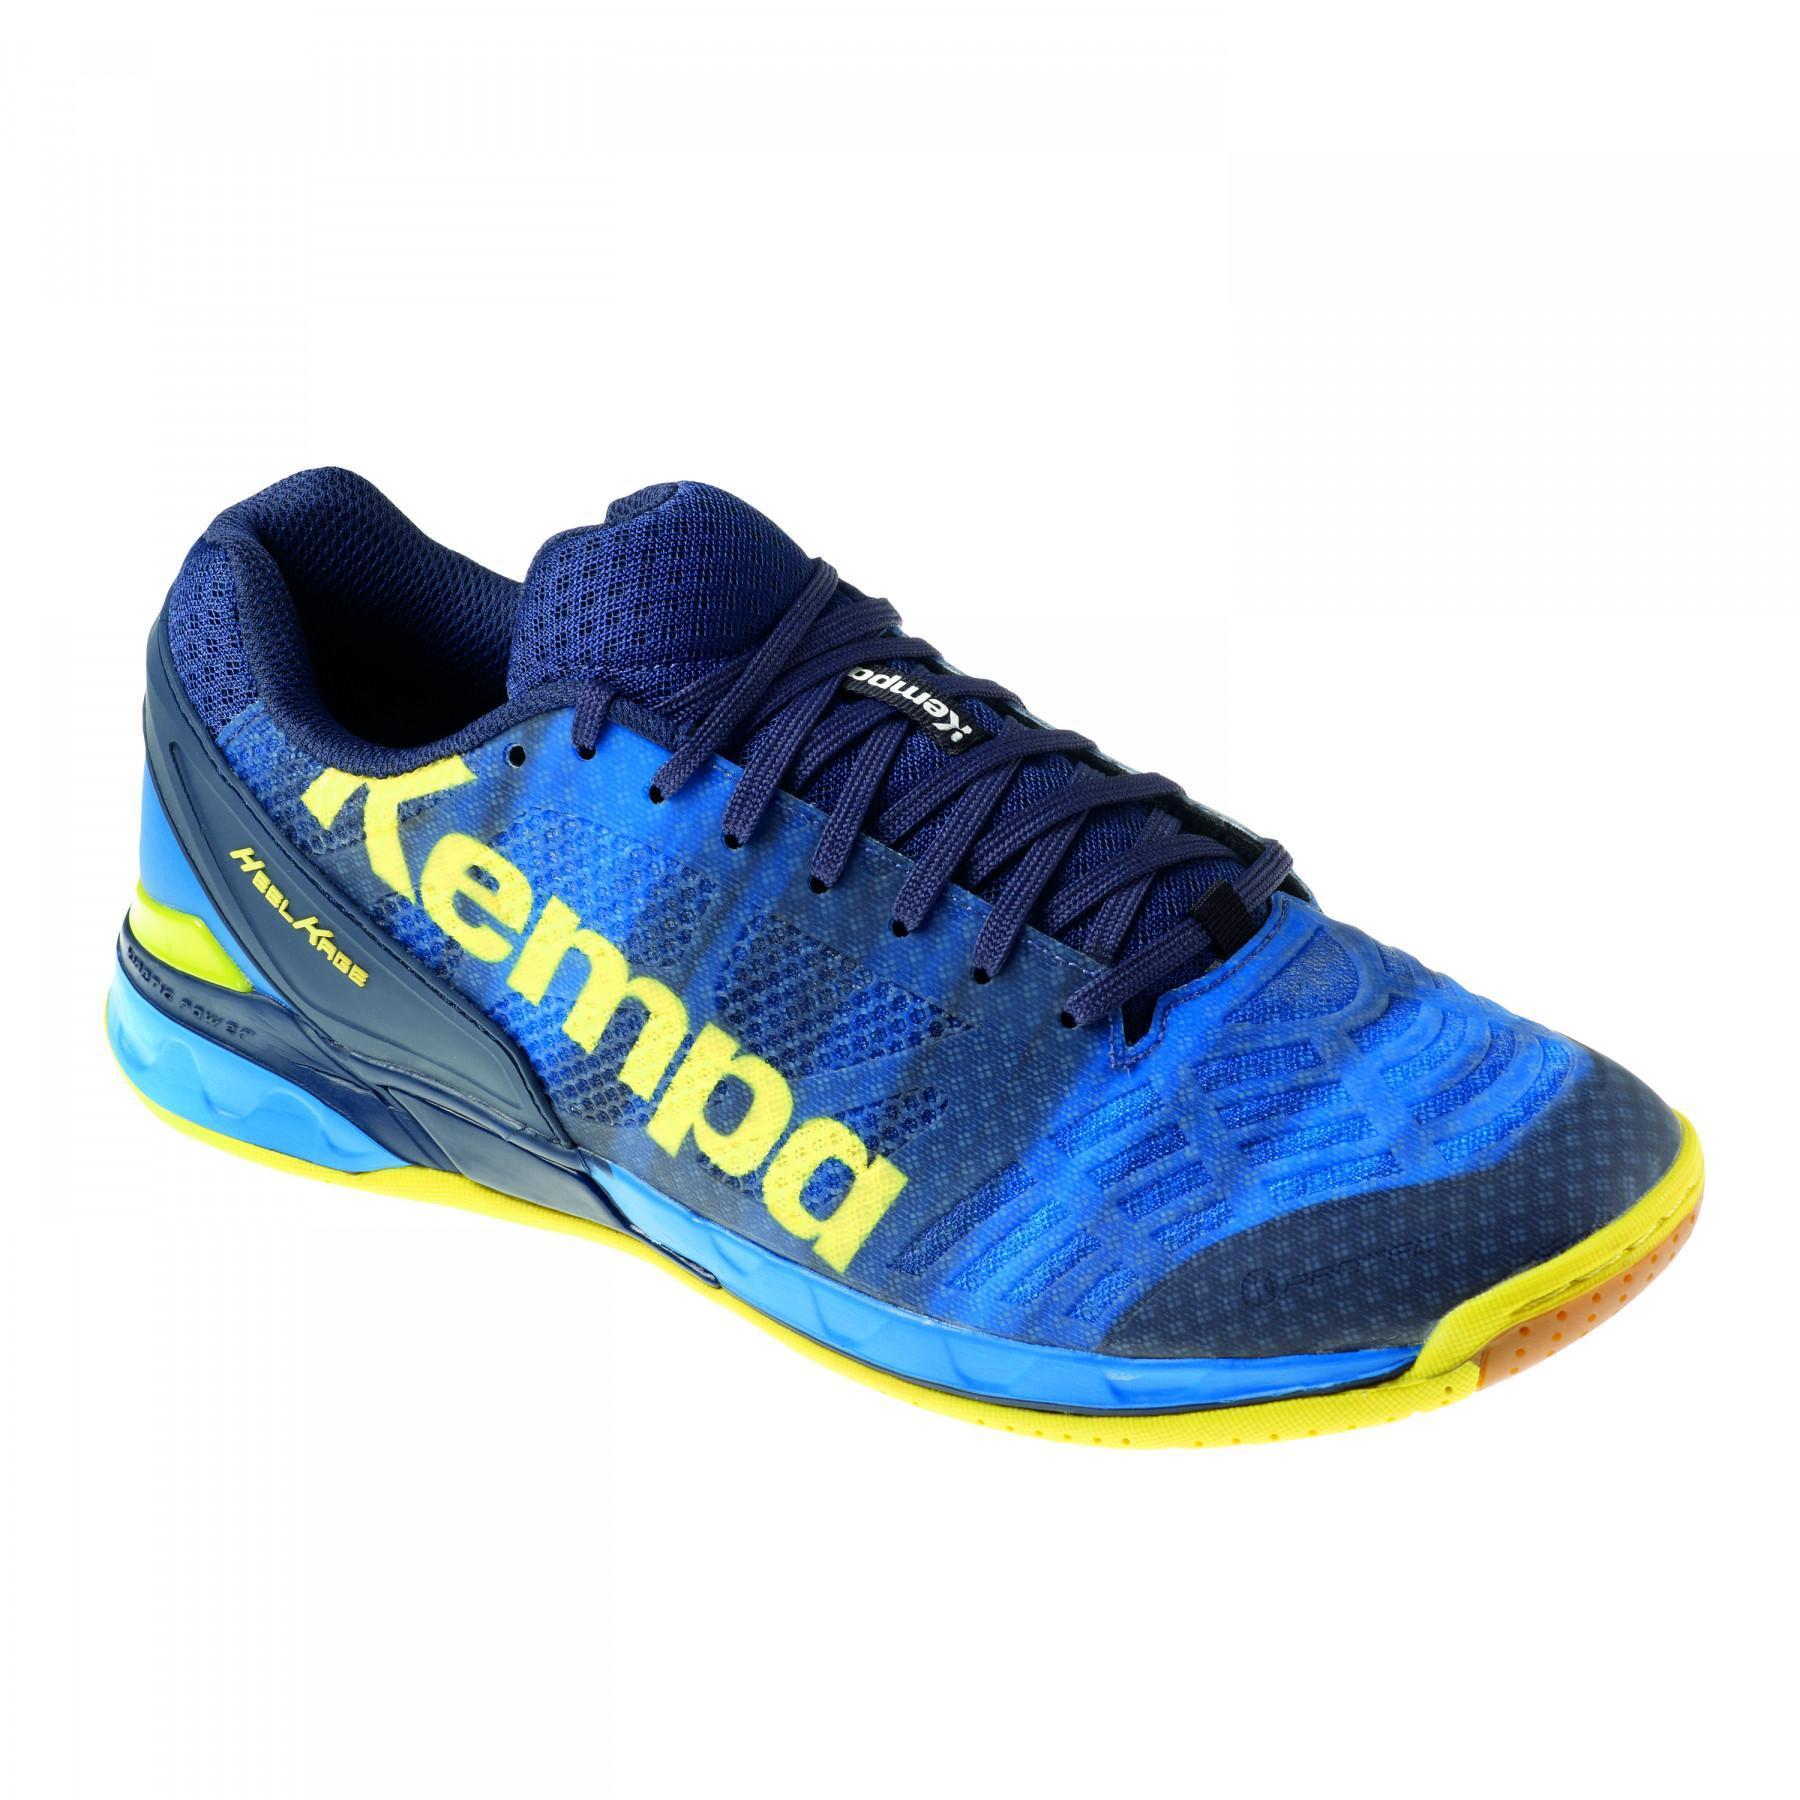 Zapatos Kempa Attack one bleu/jaune